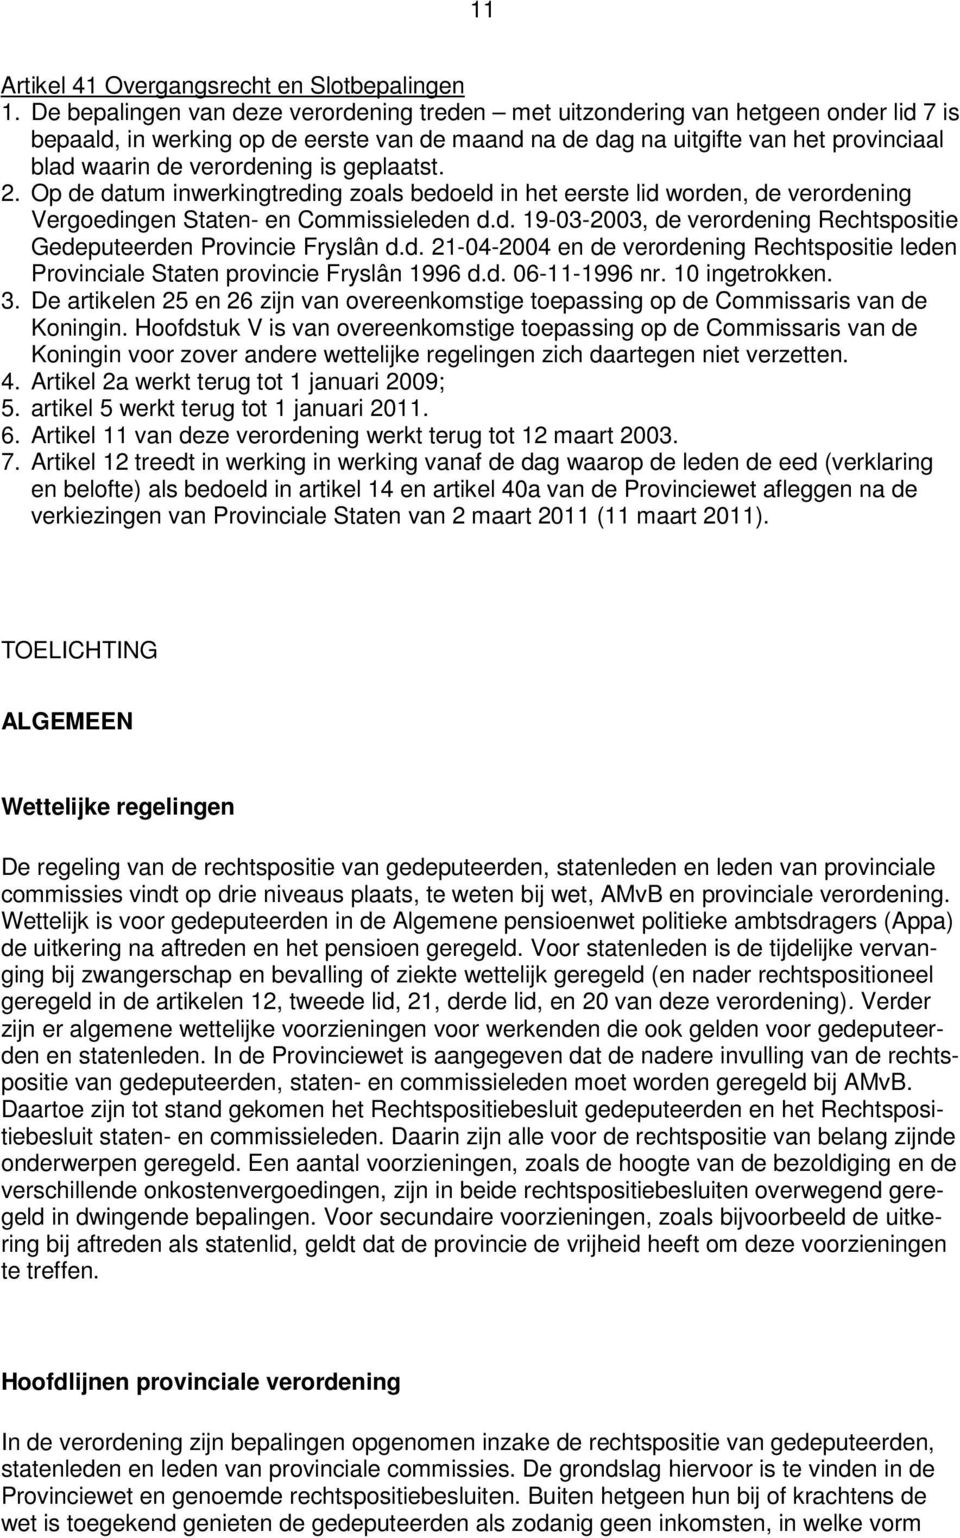 verordening is geplaatst. 2. Op de datum inwerkingtreding zoals bedoeld in het eerste lid worden, de verordening Vergoedingen Staten- en Commissieleden d.d. 19-03-2003, de verordening Rechtspositie Gedeputeerden Provincie Fryslân d.